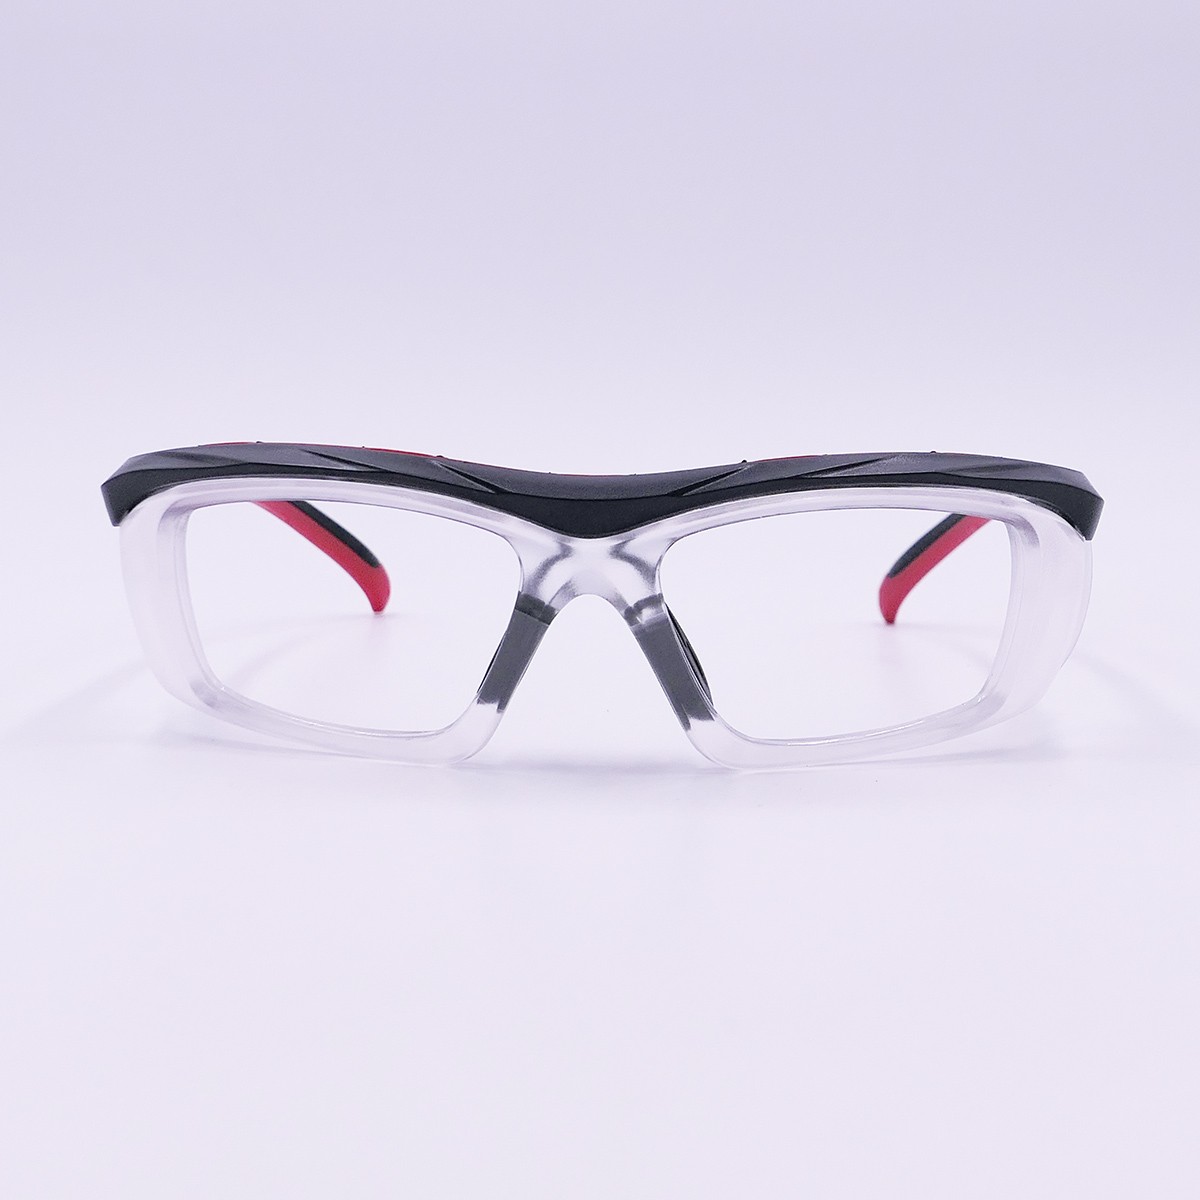 護目鏡-可更換鏡片、鏡腳可調整角度之防護眼鏡